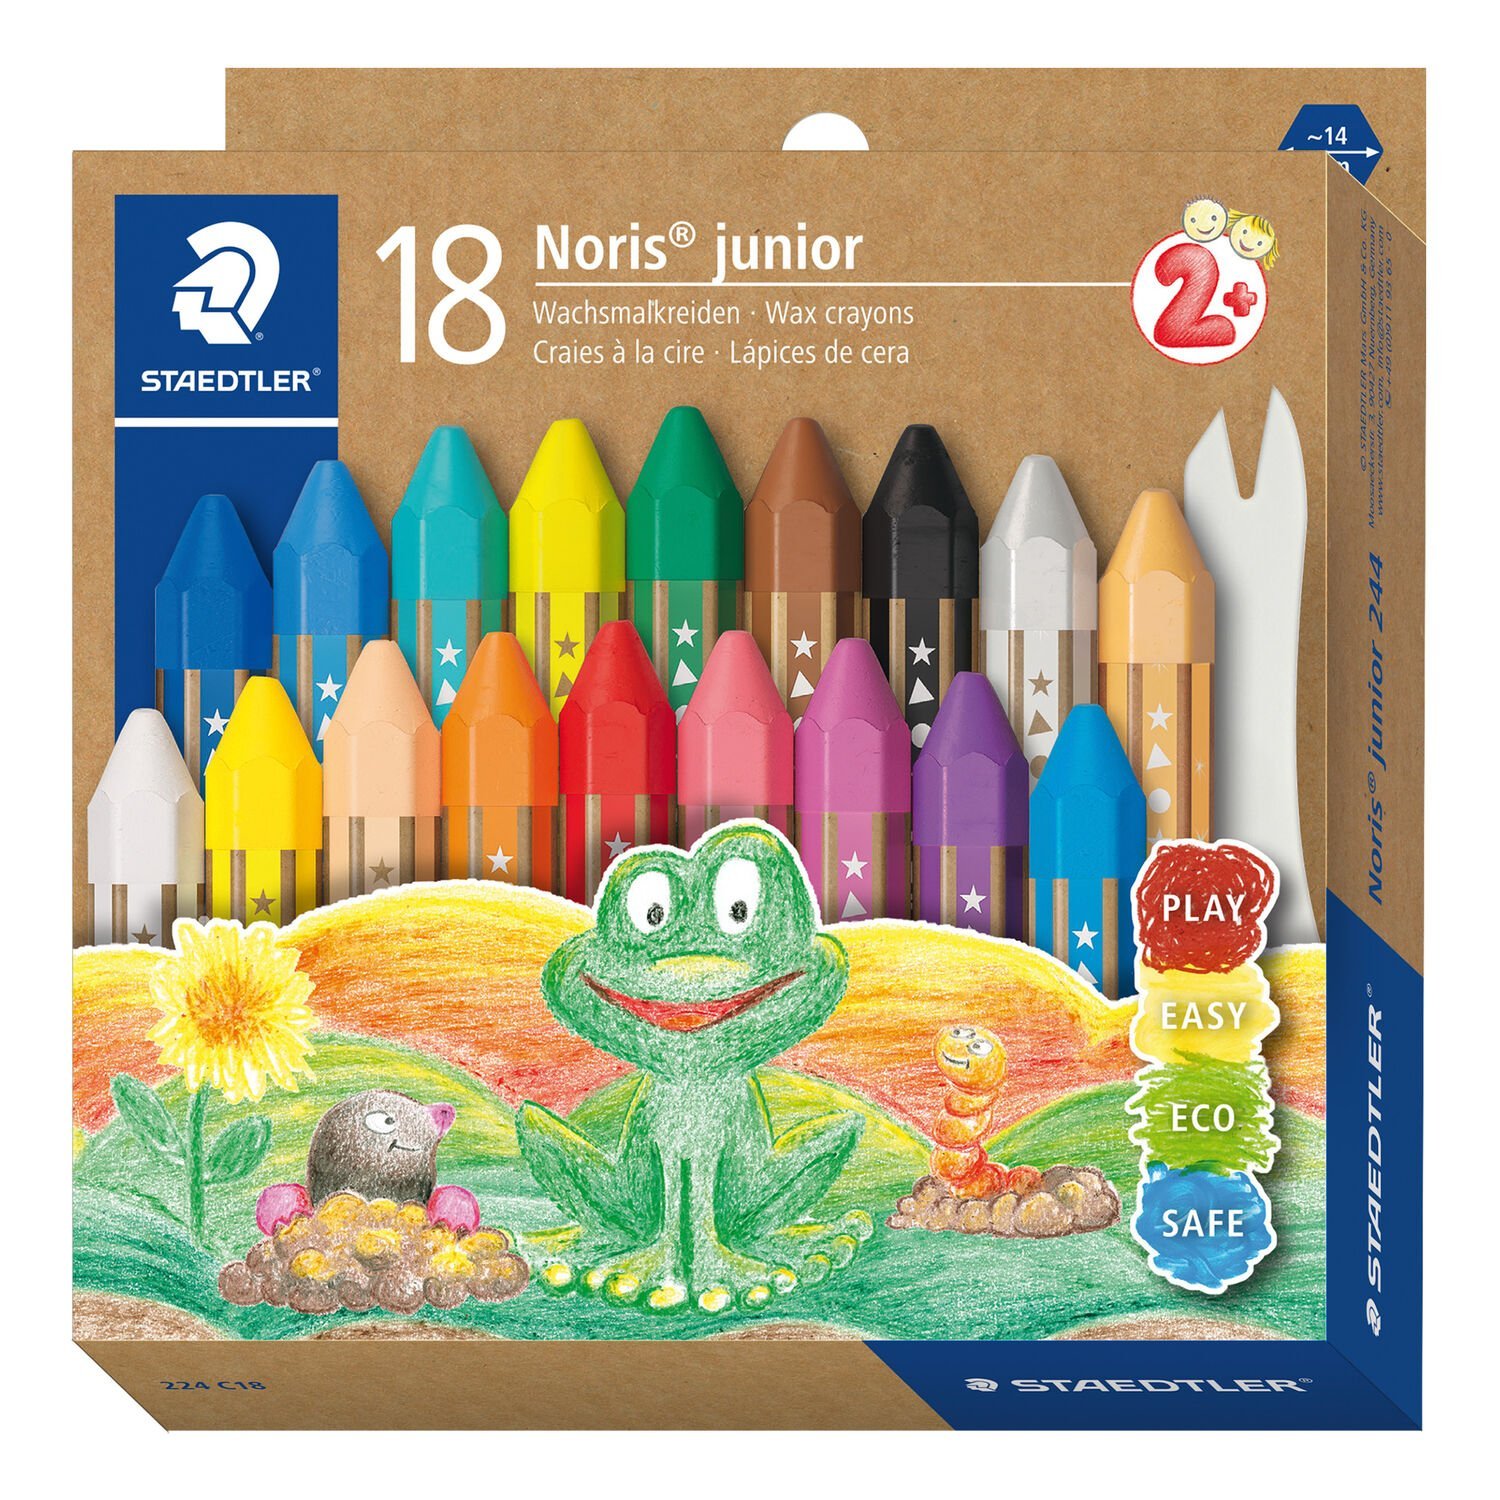 Noris® junior 224 - Wax crayon